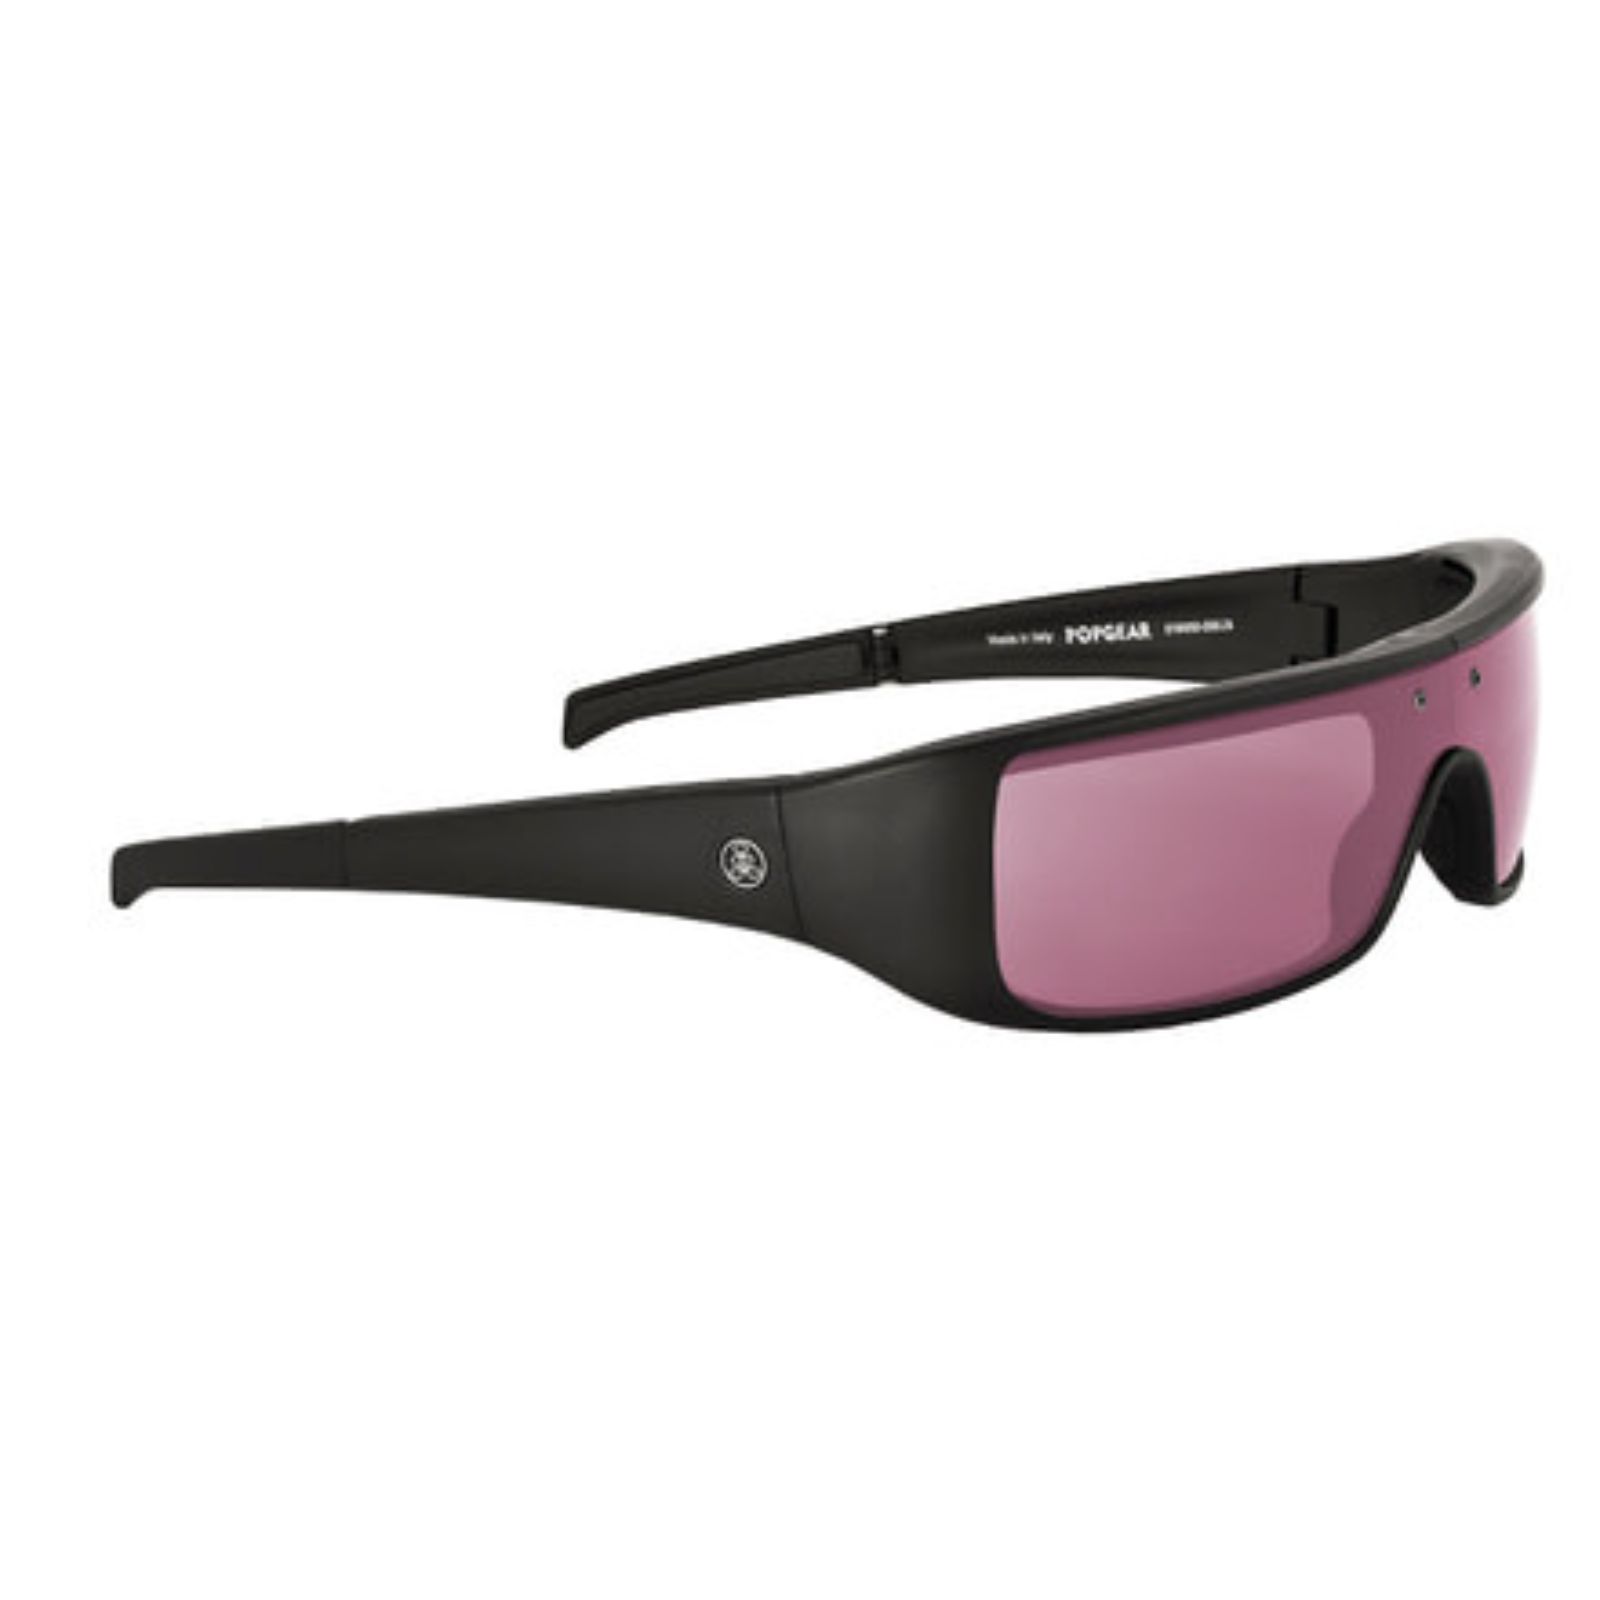 Poptical Popgear Sunglasses Matte Black/Gray Polarized